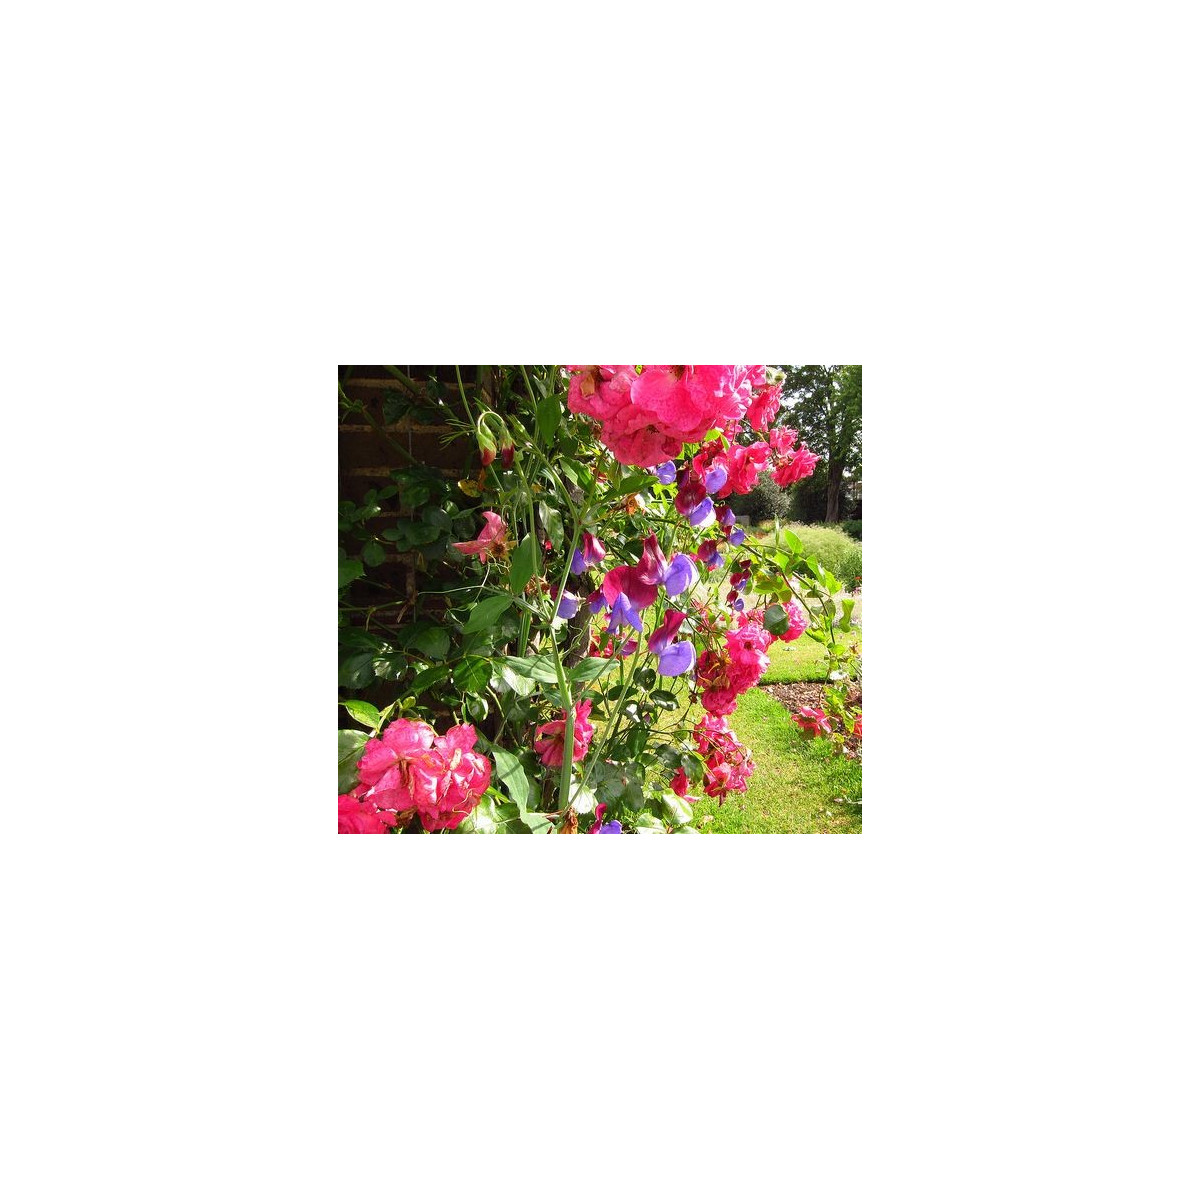 Hrachor vonný růžový - Lathyrus odoratus - semena hrachoru - 20 ks